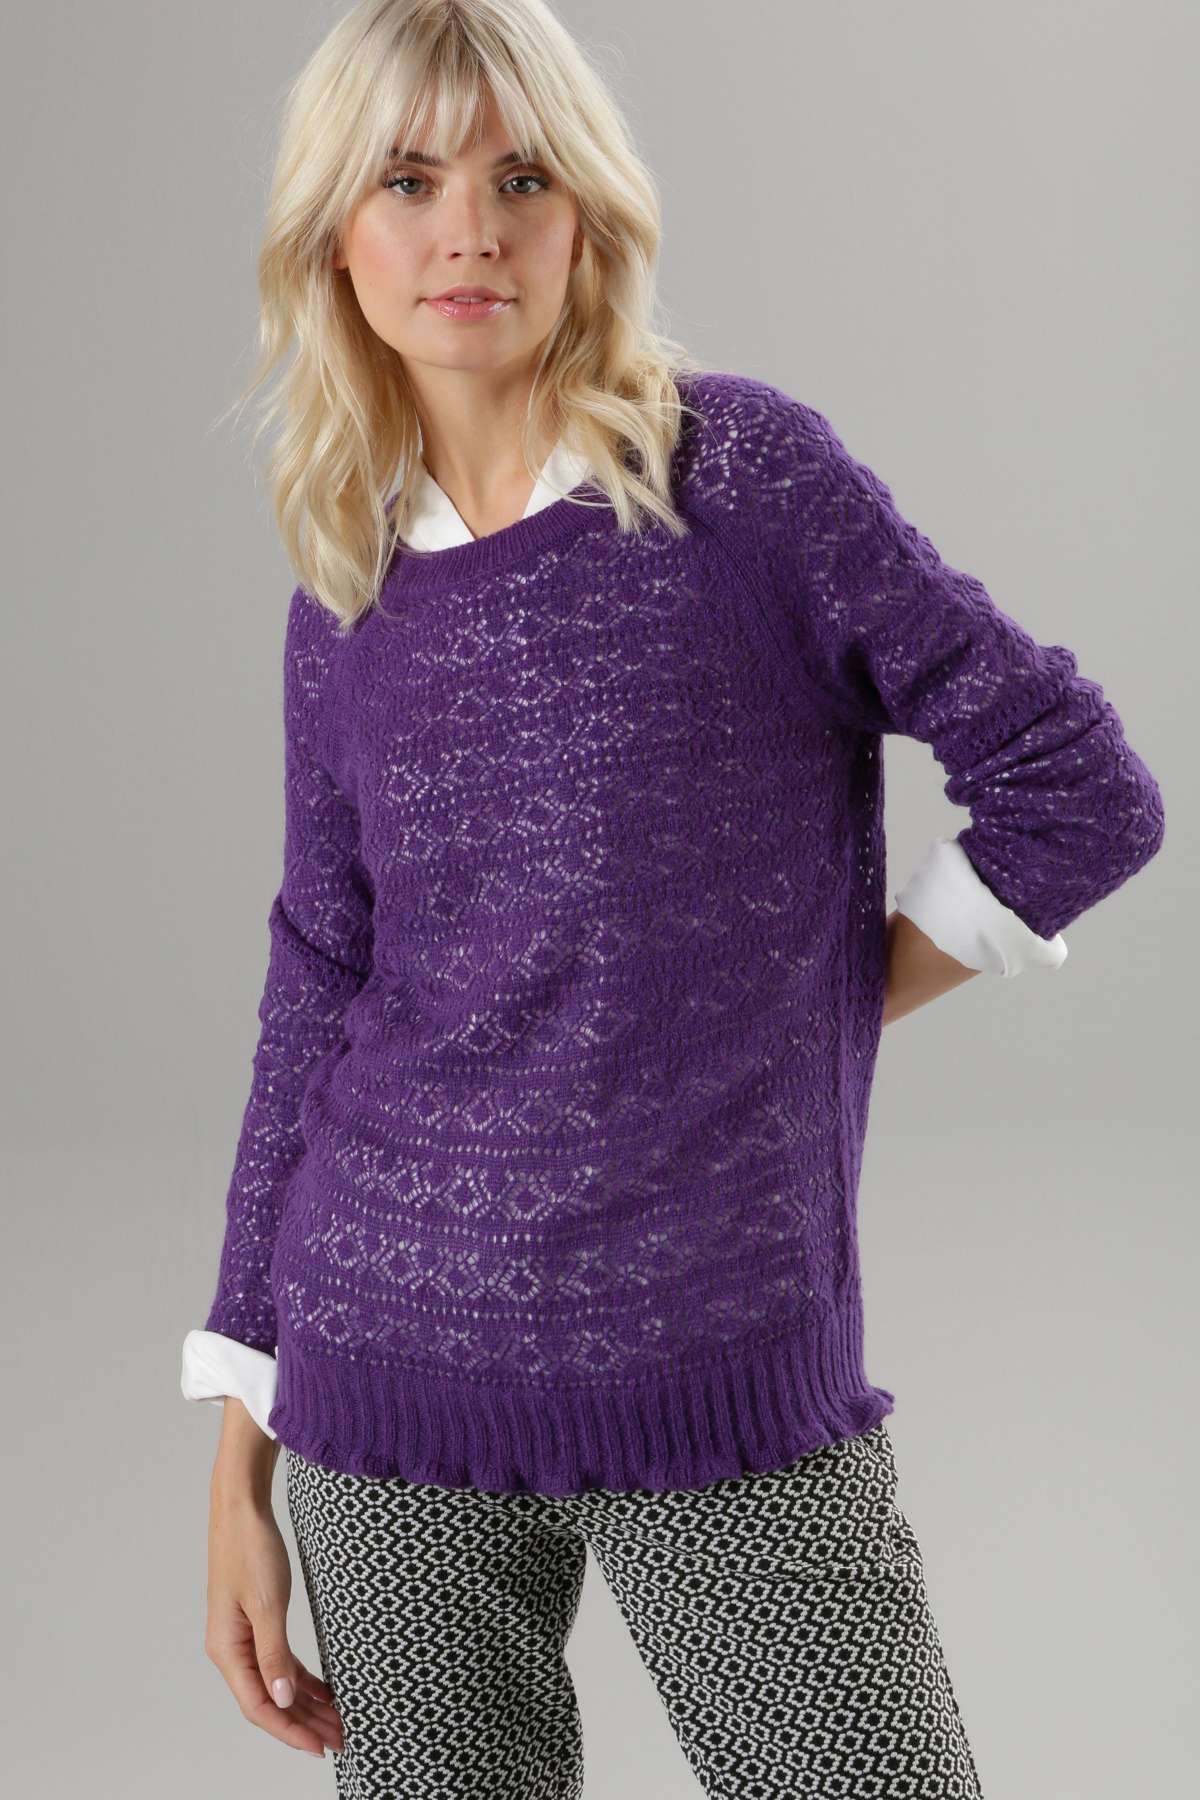 Вязаный свитер ажурным узором и волнистым краем.